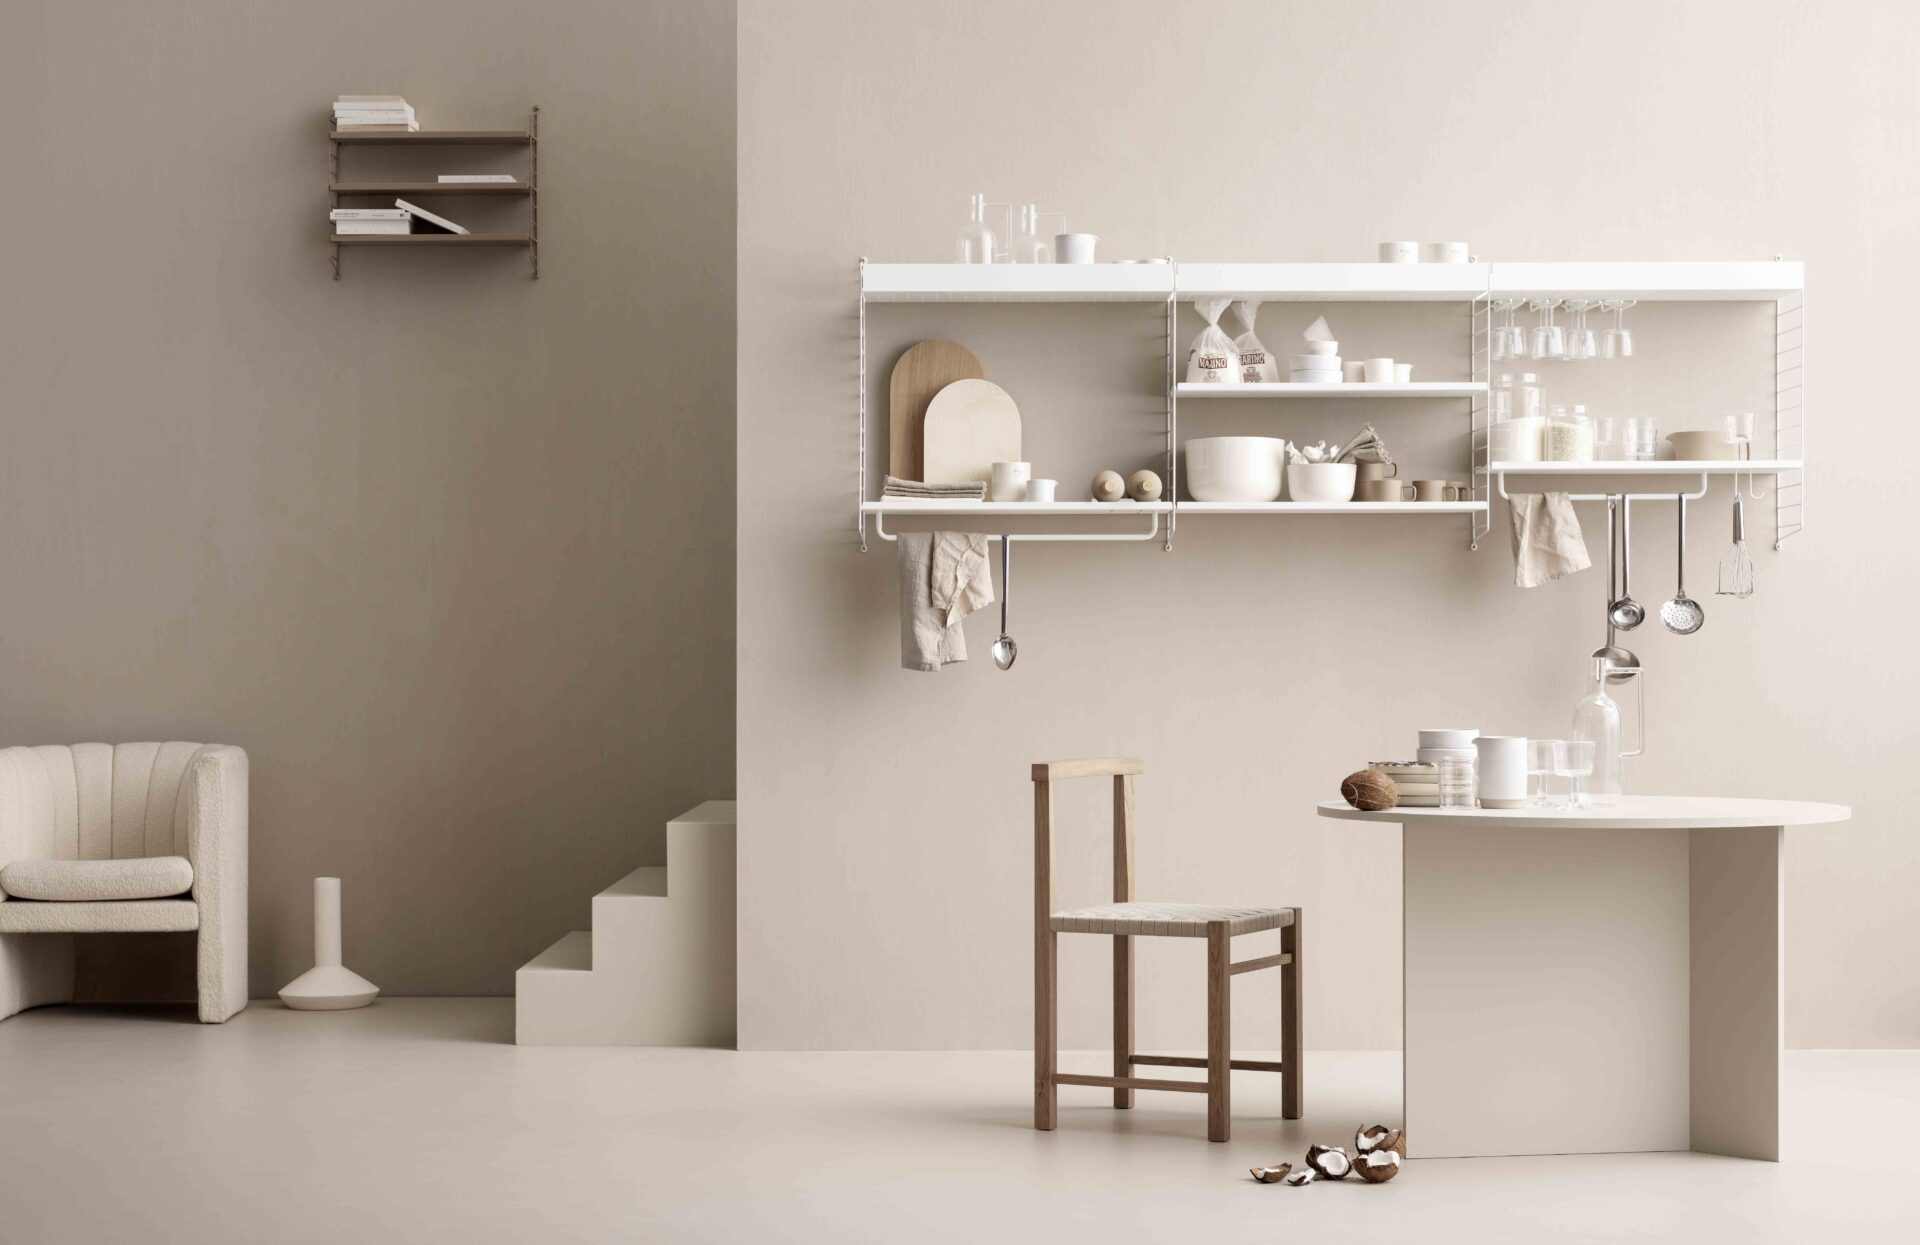 Freudenreich Interior Design | Regal String Kitchen